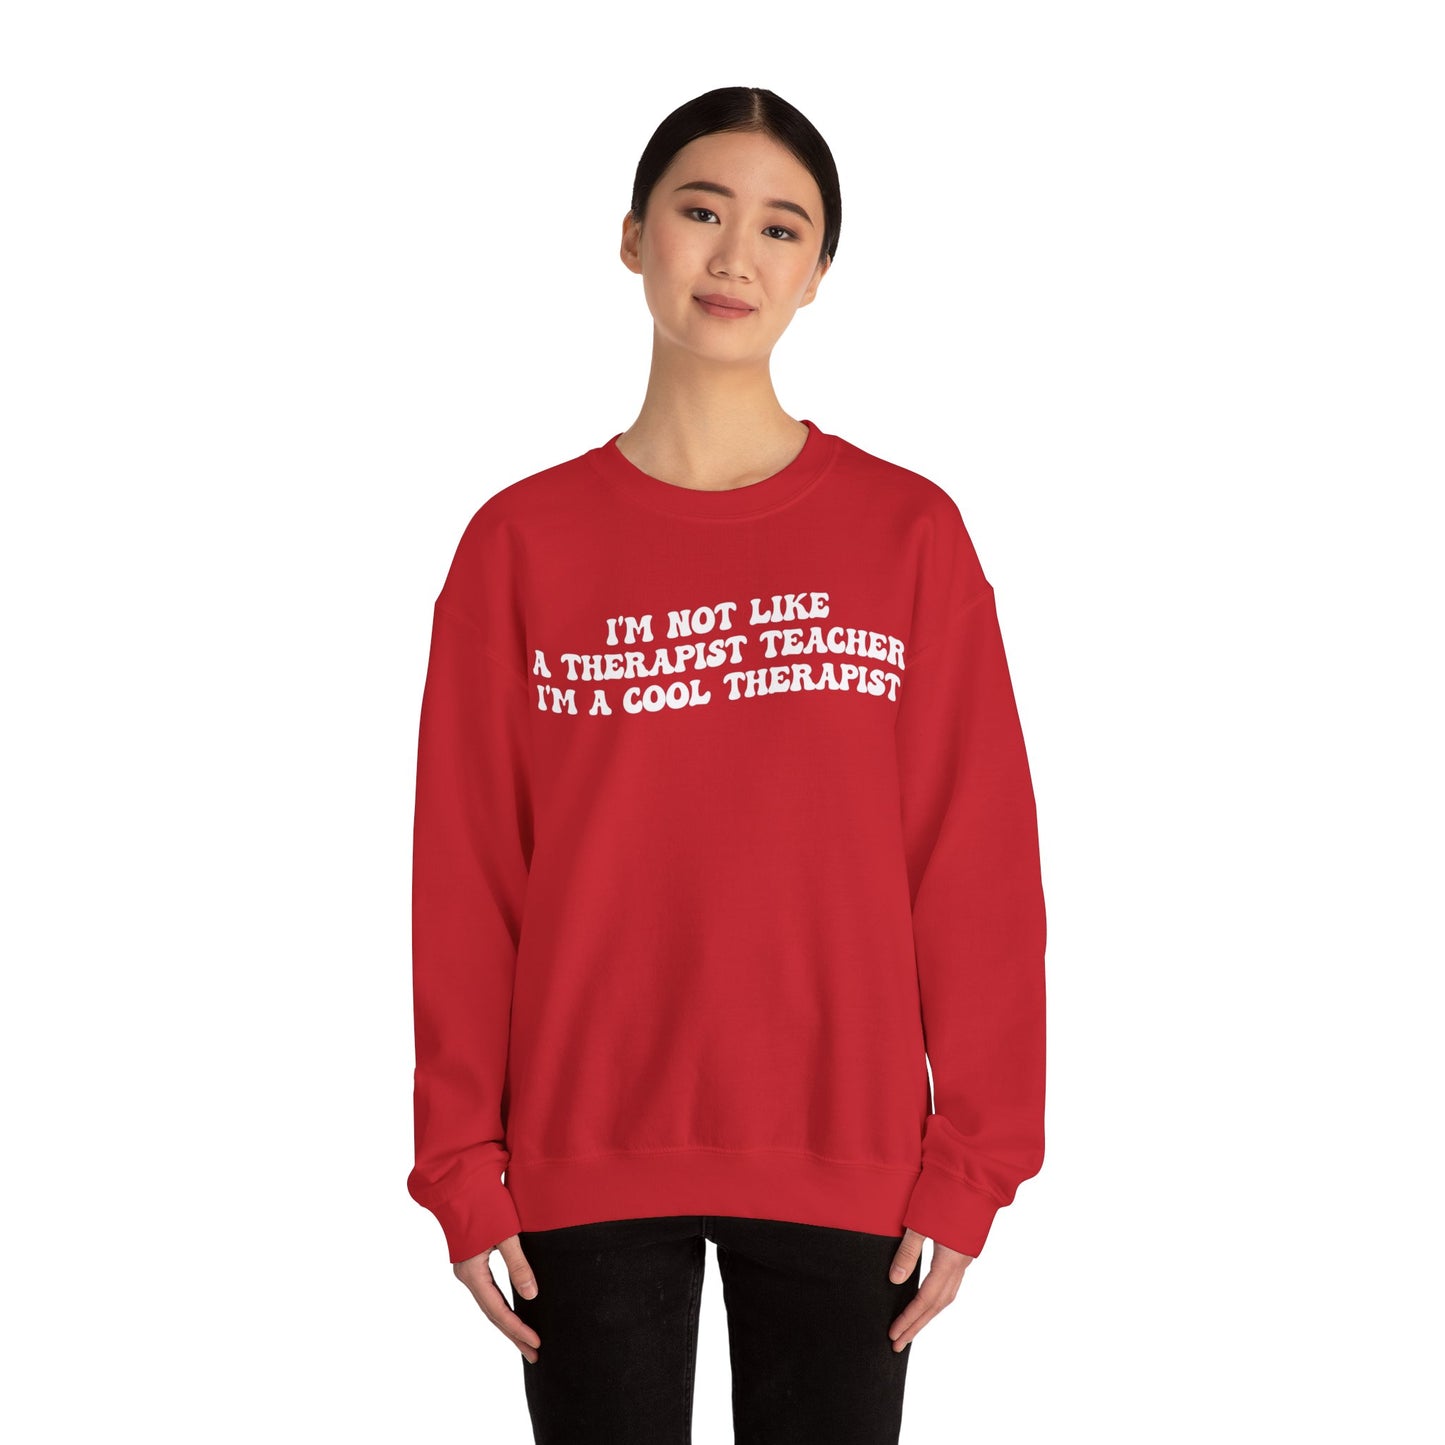 I'm Not Like A Therapist Teacher I'm A Cool Therapist Sweatshirt, Cool Therapist Appreciation Sweatshirt, Sweatshirt for Therapist, S1554